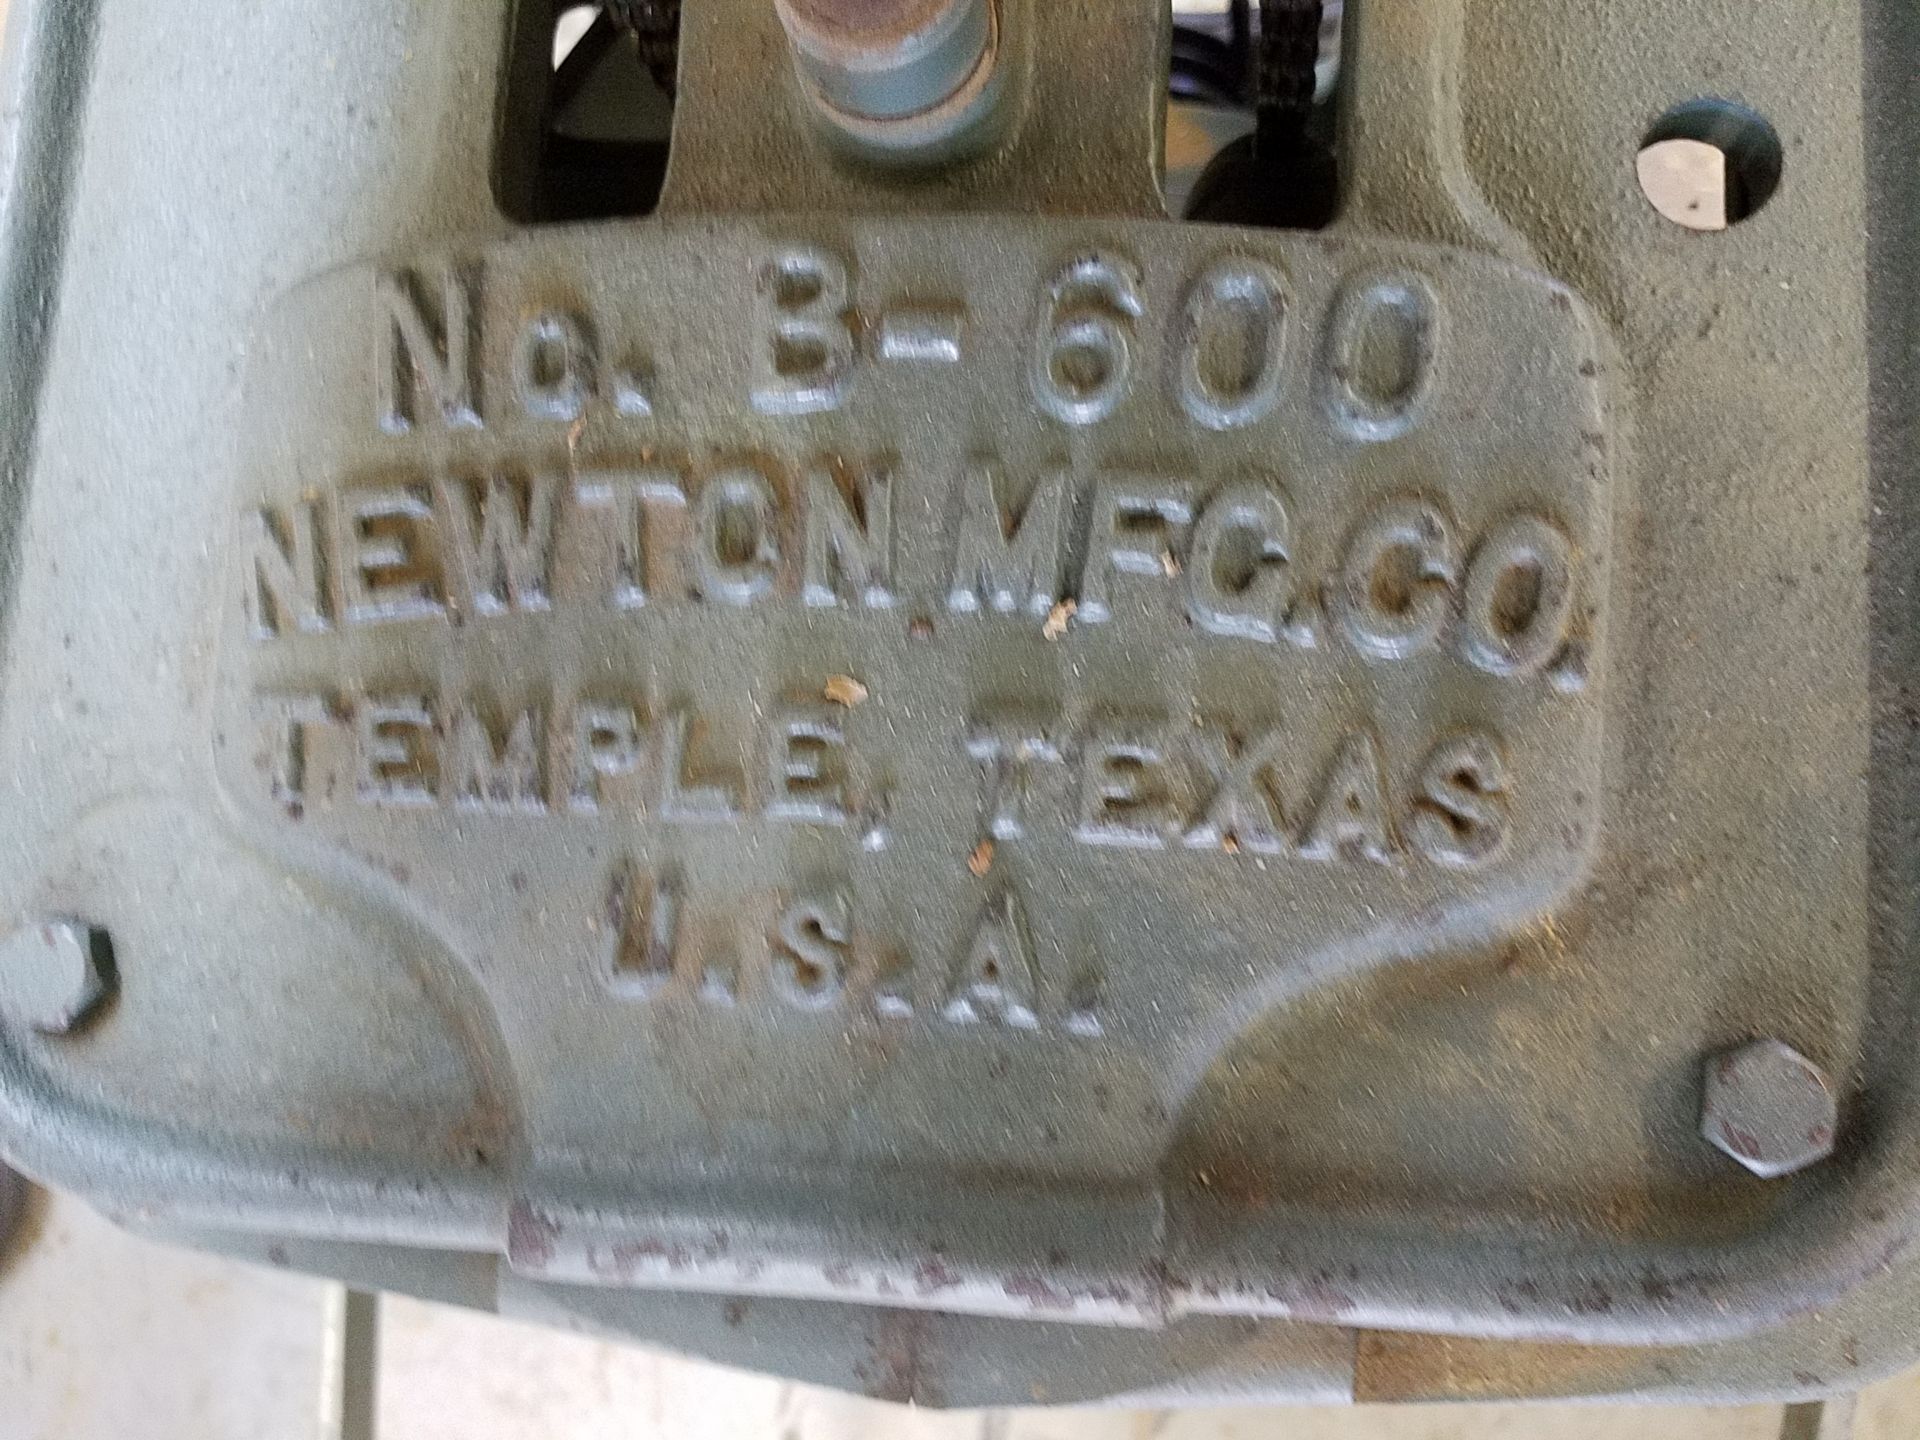 Newton No. B-600 Hinge Boring Machine, 2- Spindle, 3- Phase, Loading Fee $25 - Image 3 of 5